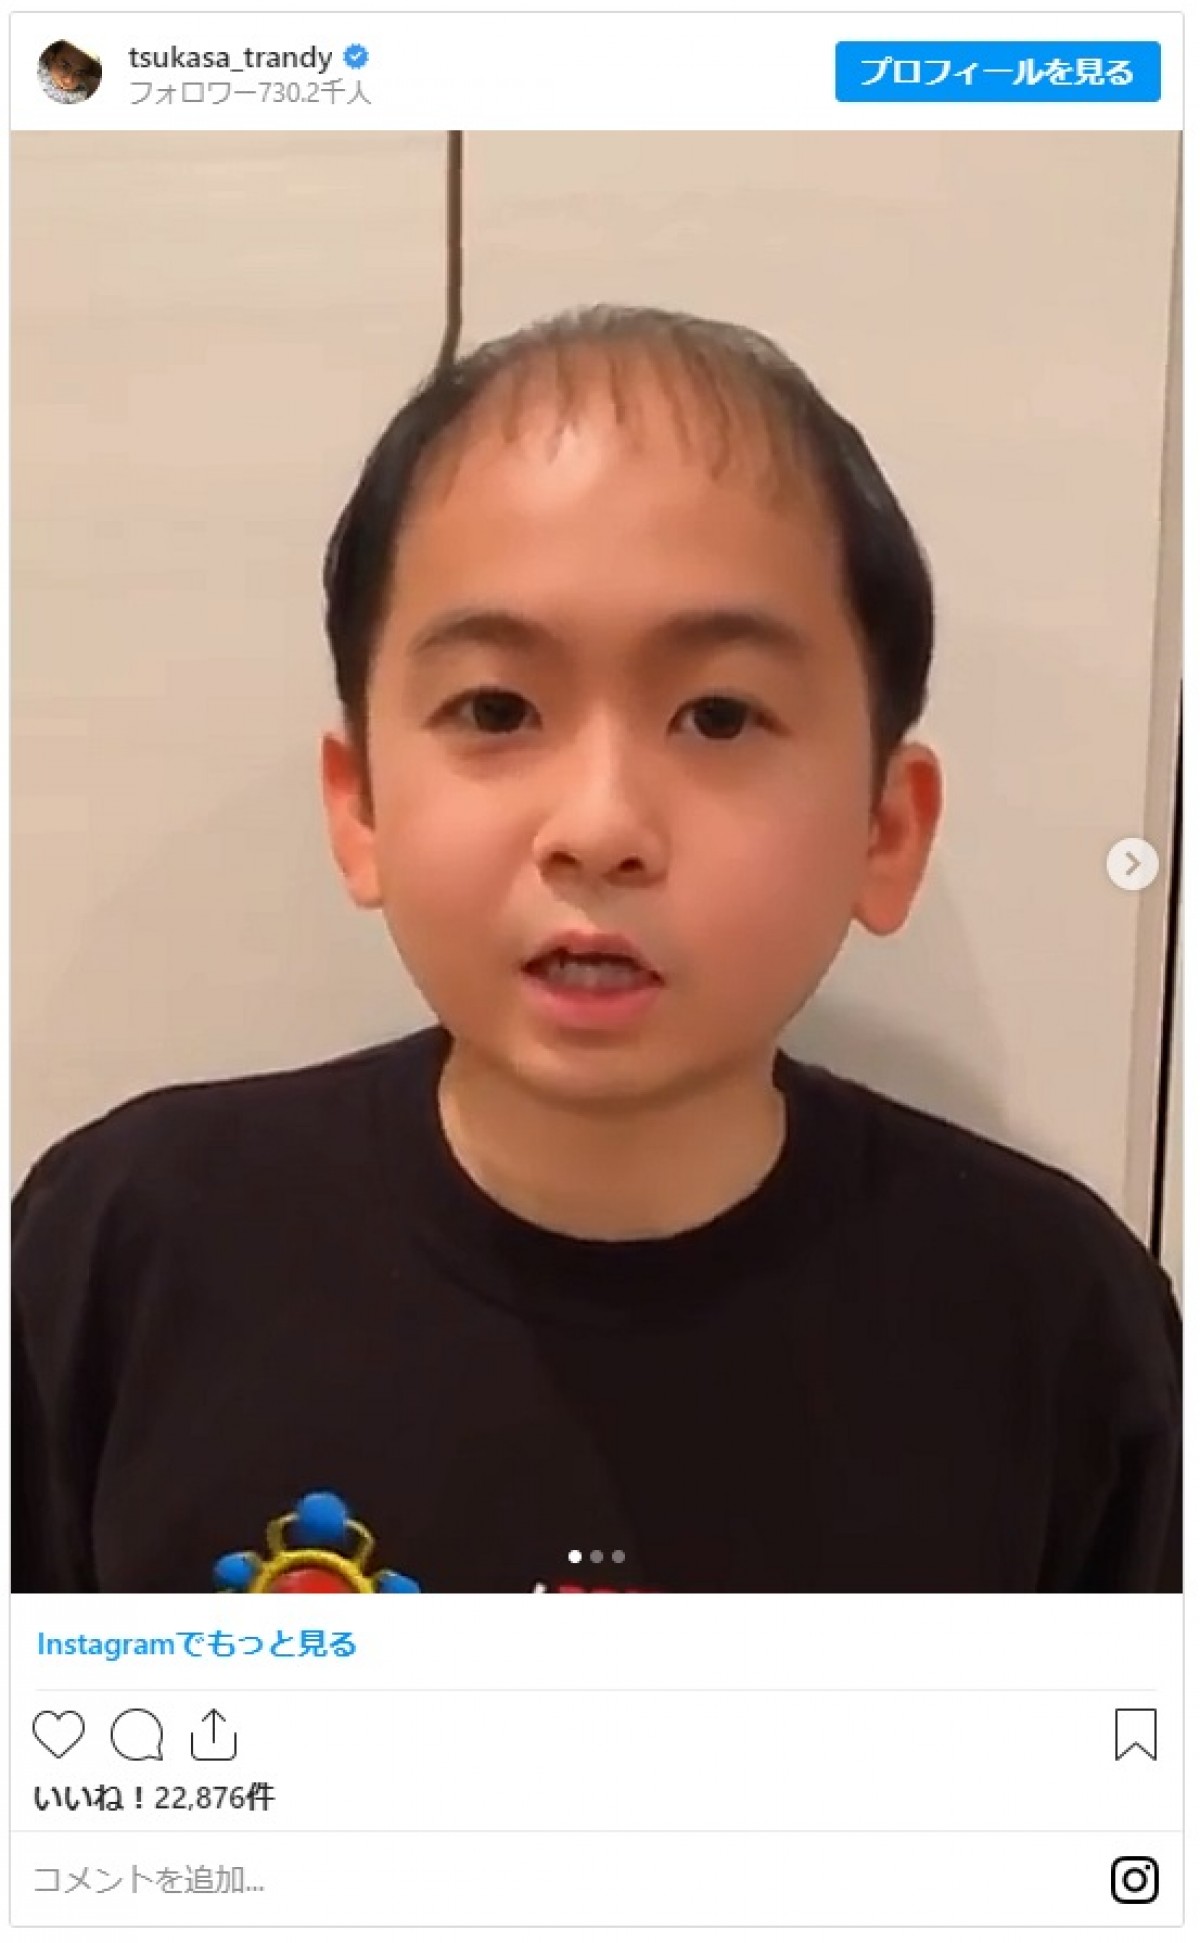 トレエン斎藤、アプリで子ども姿になった結果「なんとなく有吉さんになった」 ファンも同意